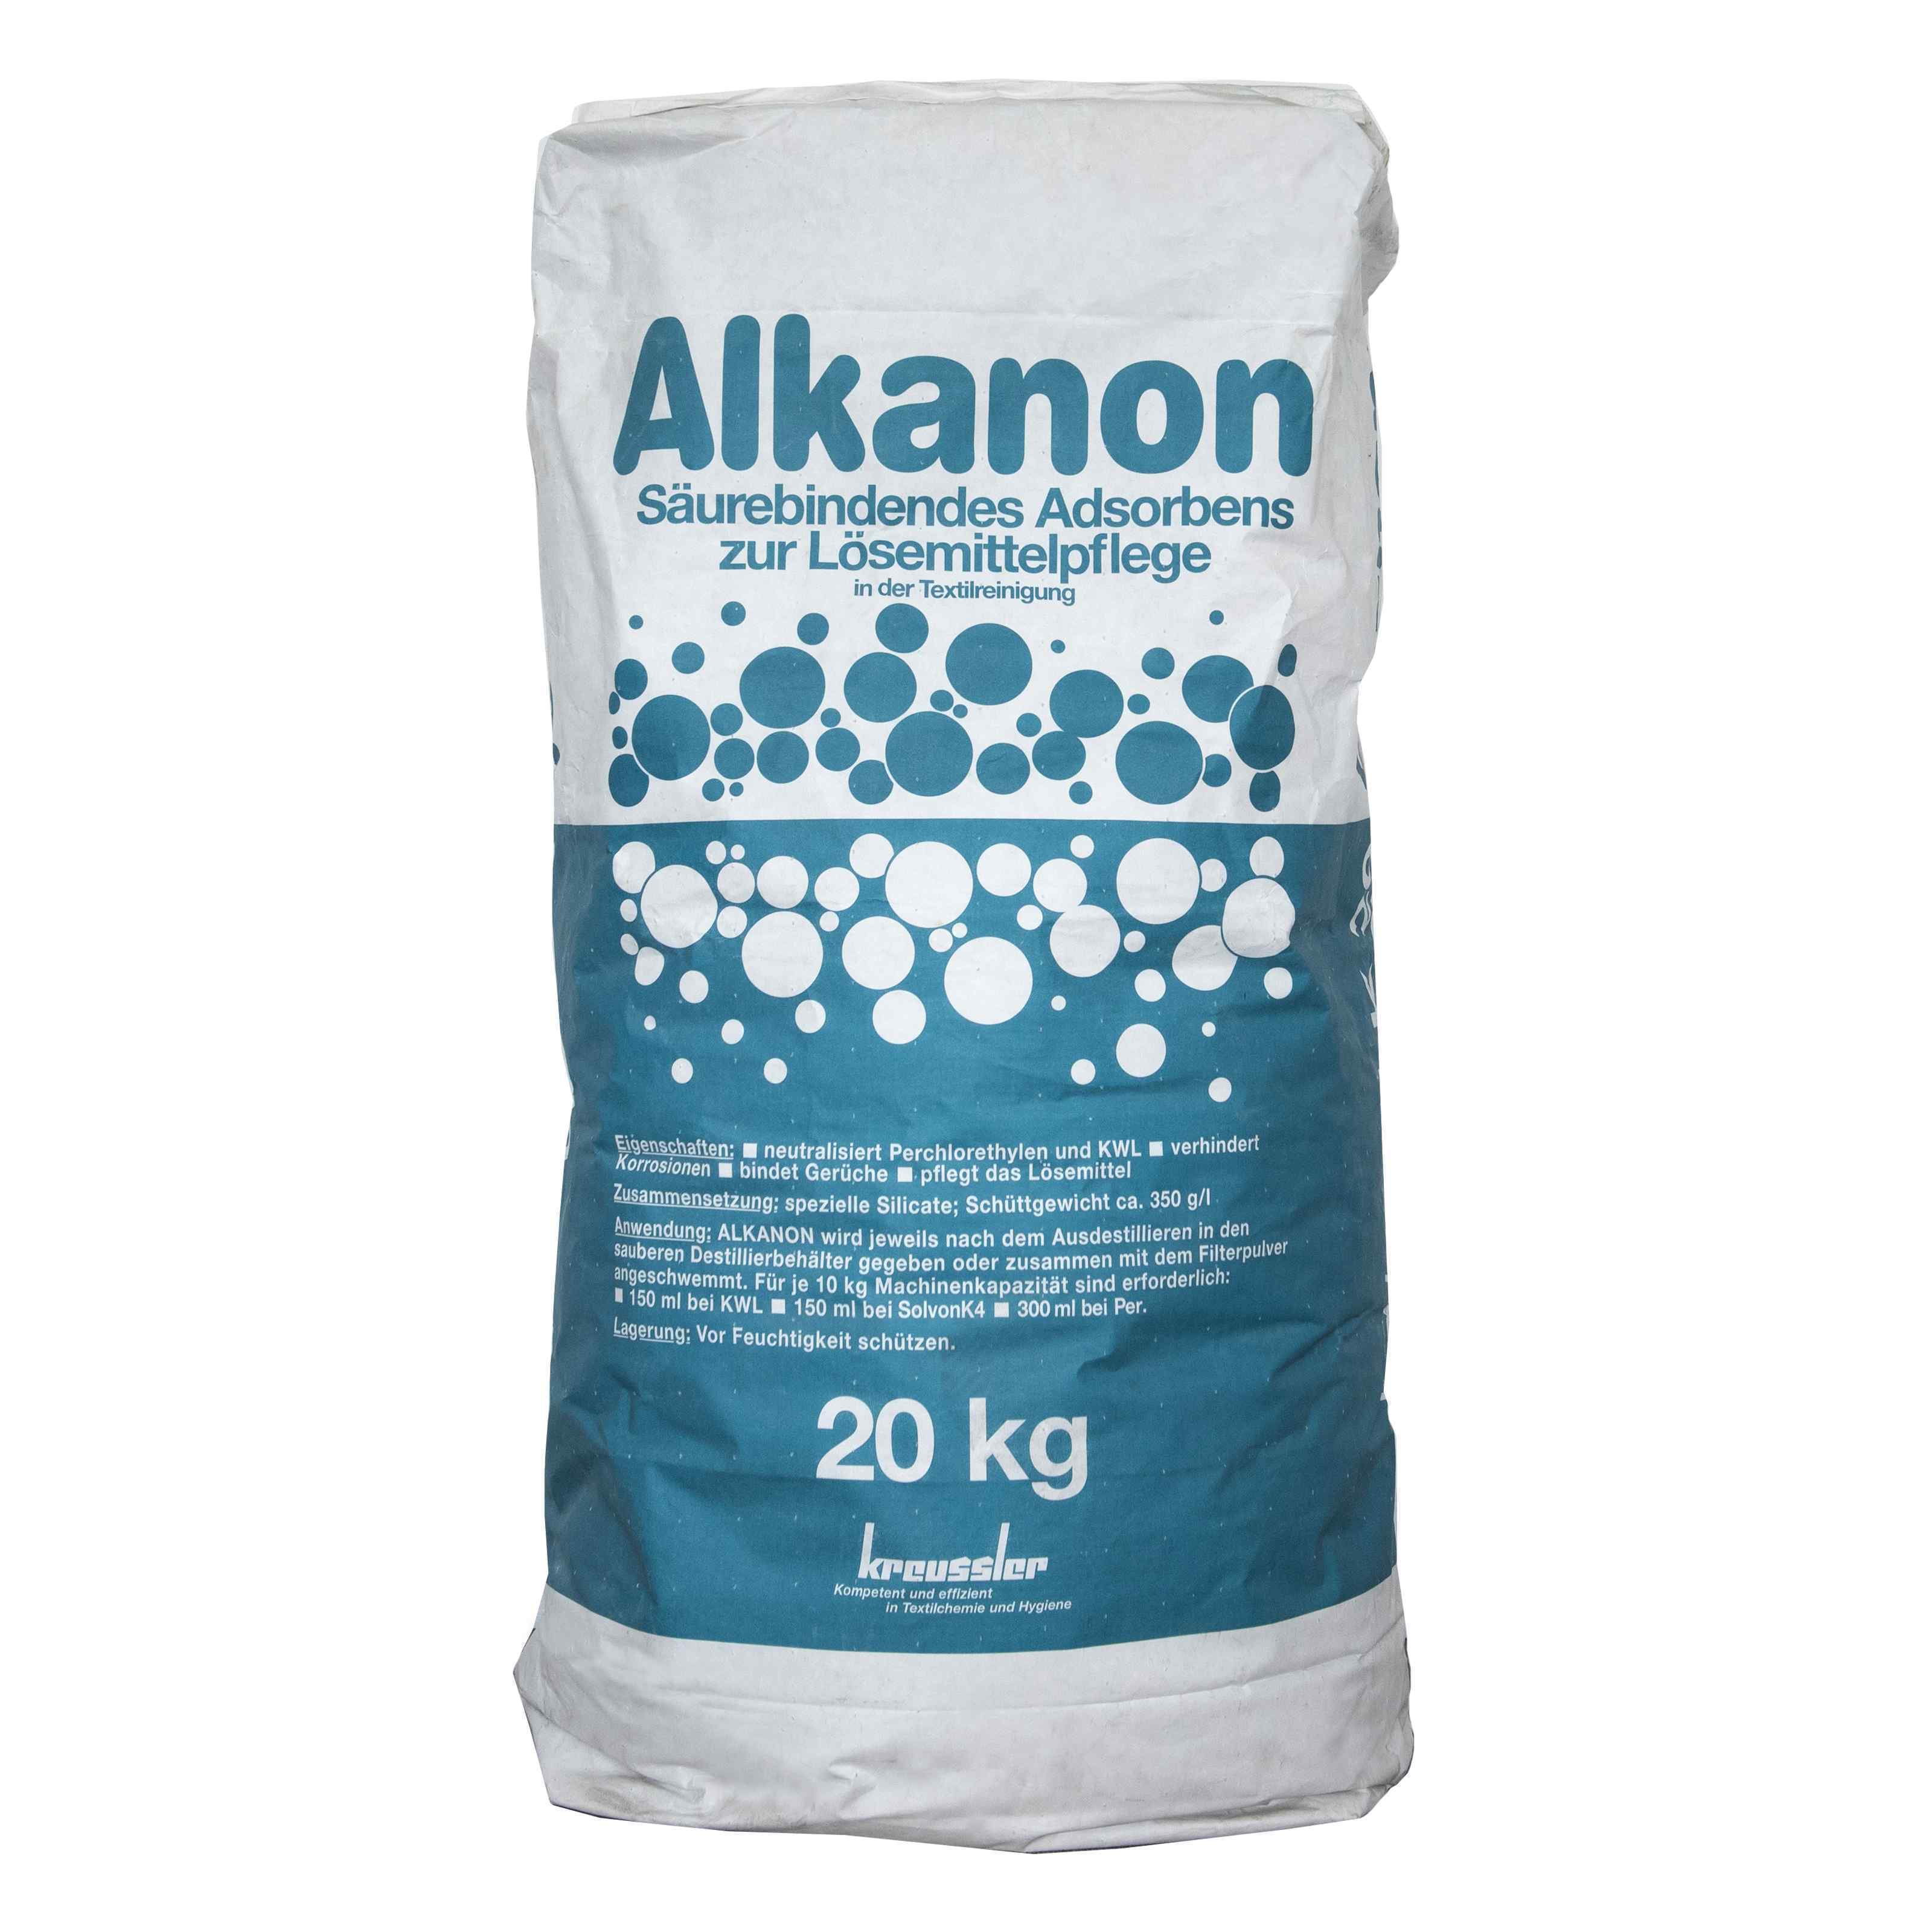 Kreussler - Alkanon (20kg) Powder